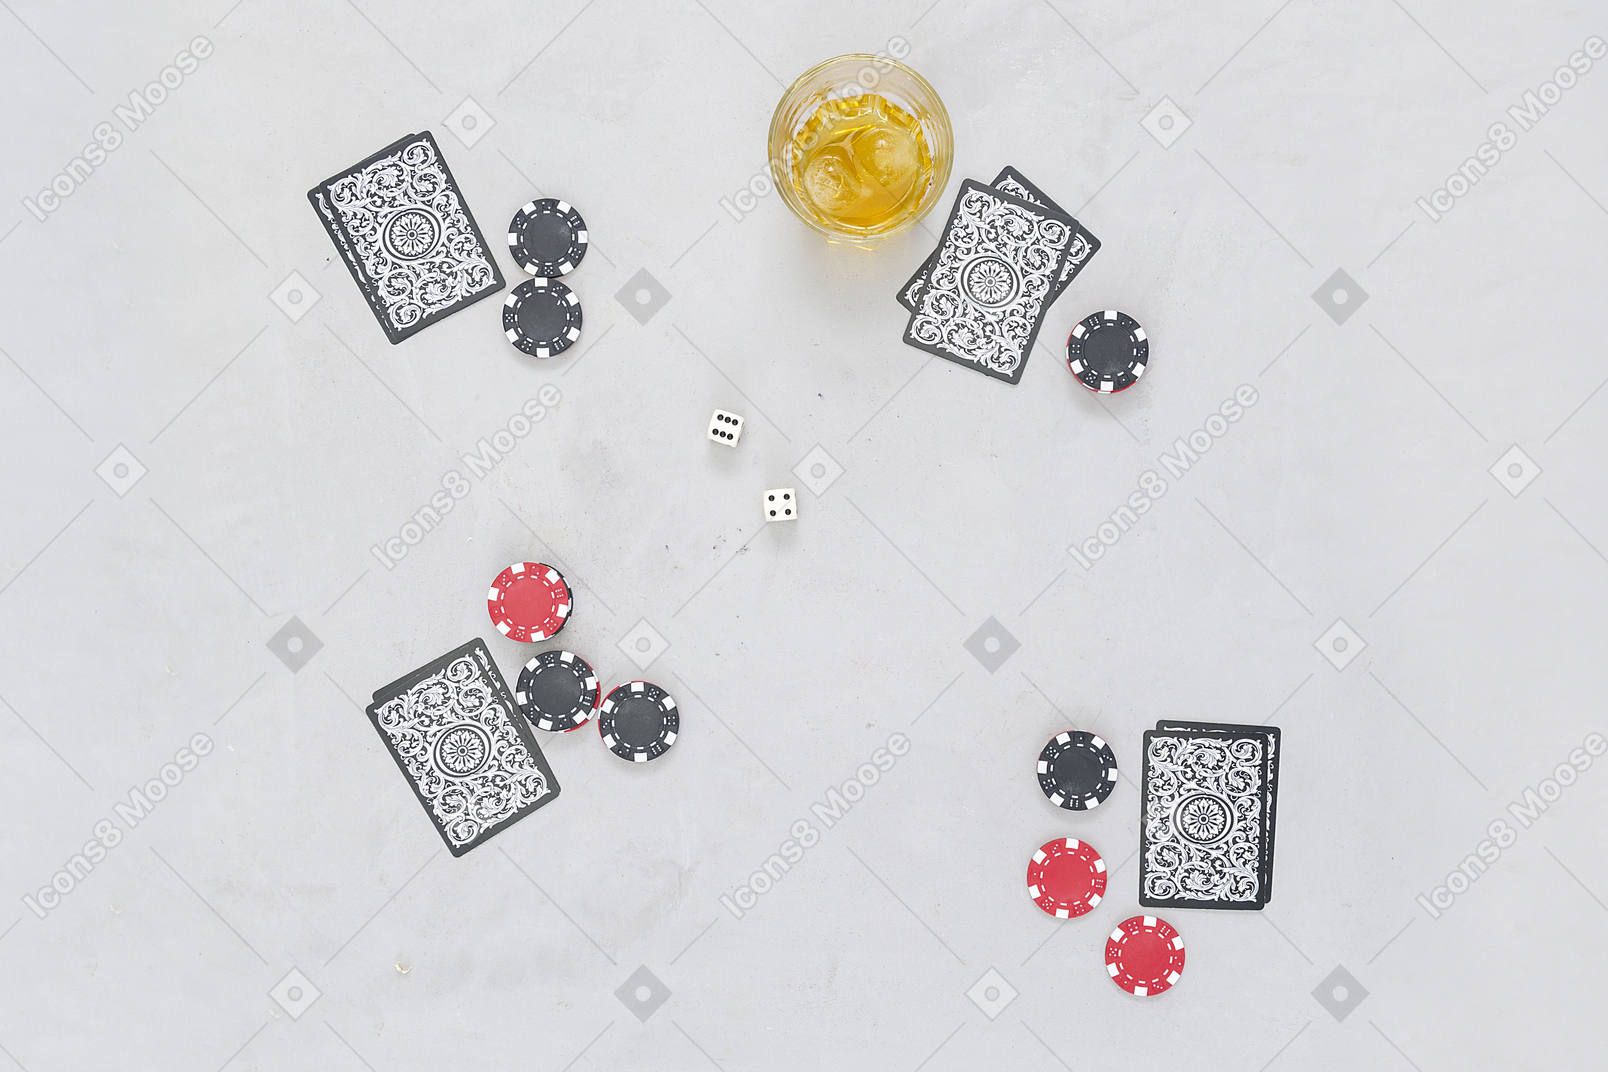 Настольные карточные игры идут хорошо с алкогольными напитками